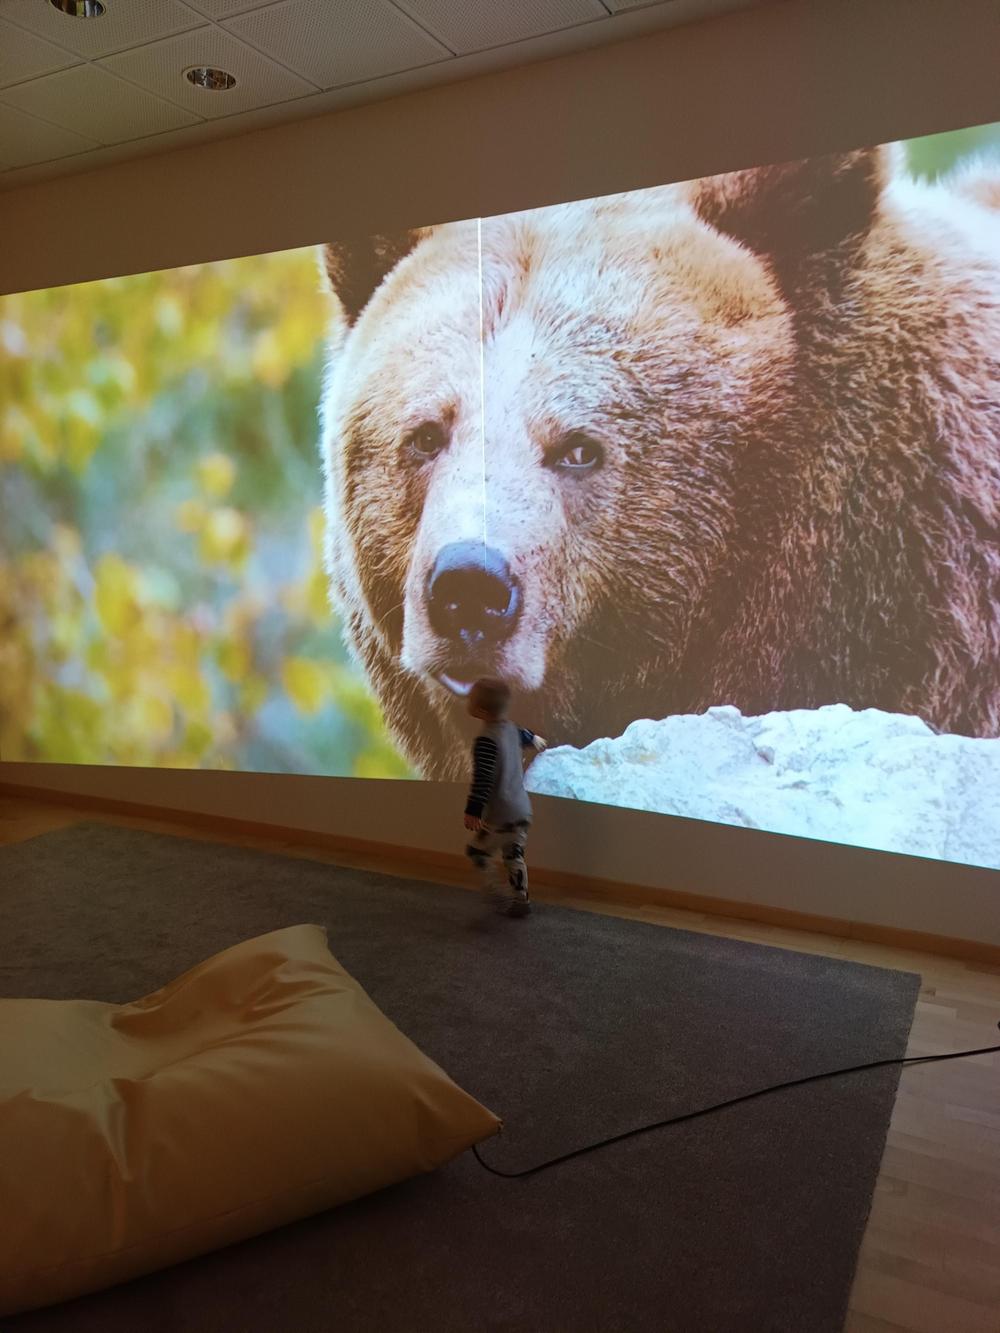 Kuvassa aistihuone, jossa isolla näytöllä video karhusta. Pieni poika seisoo ja katsoo videota. Lattialla on säkkituoli.